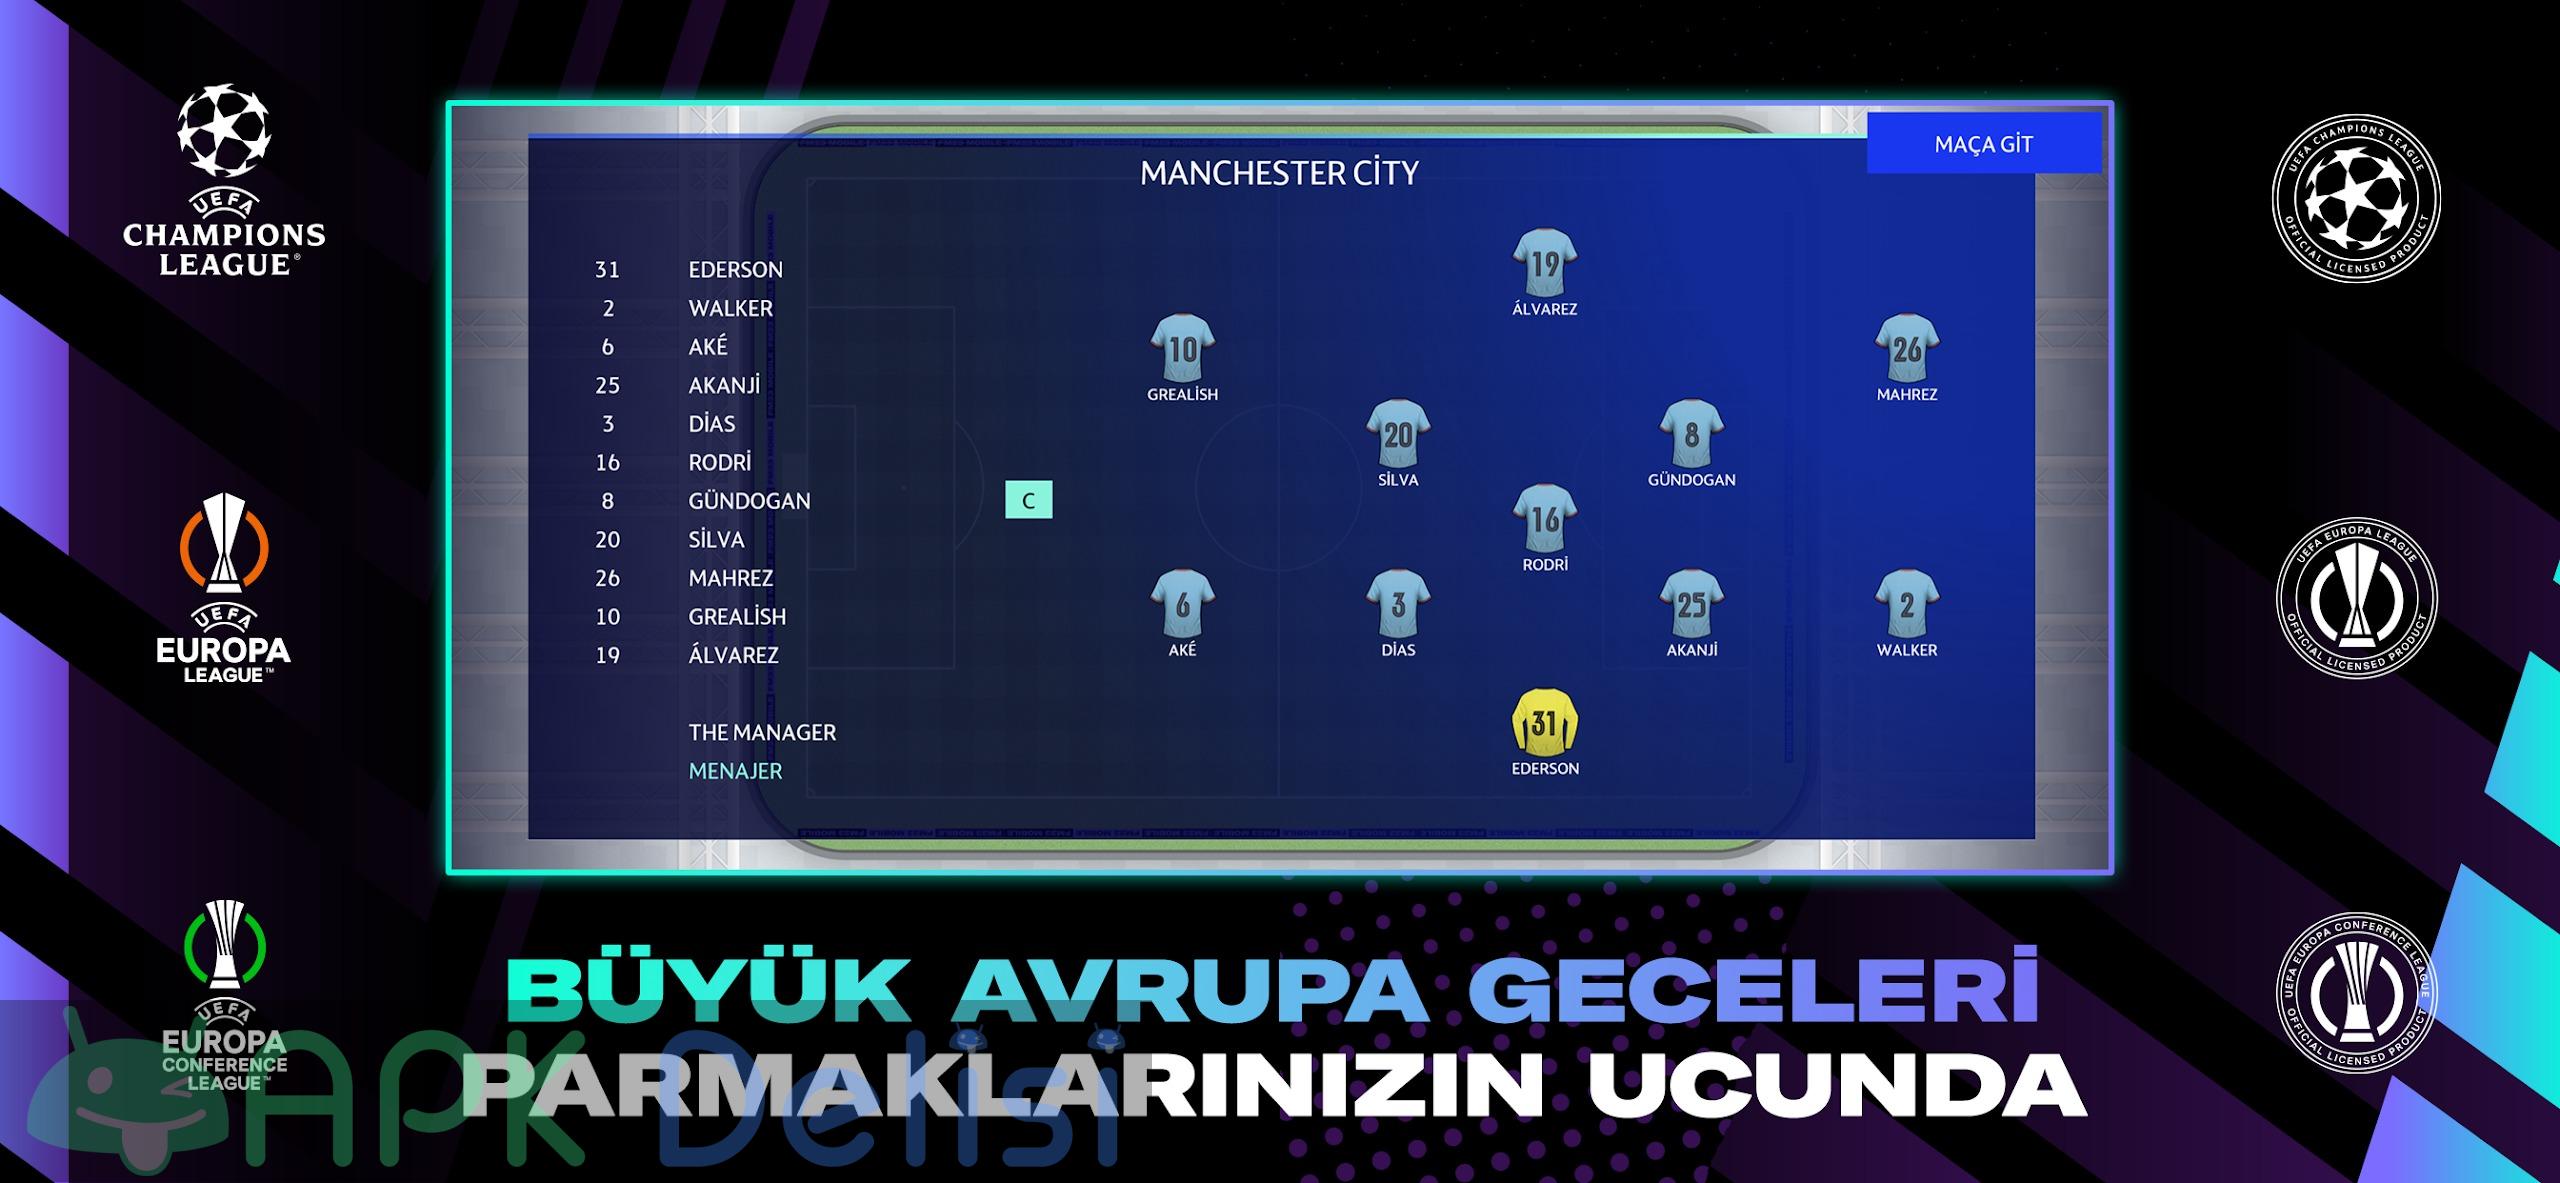 Football Manager 2023 Mobile v14.0.4 FULL APK — TAM SÜRÜM 5